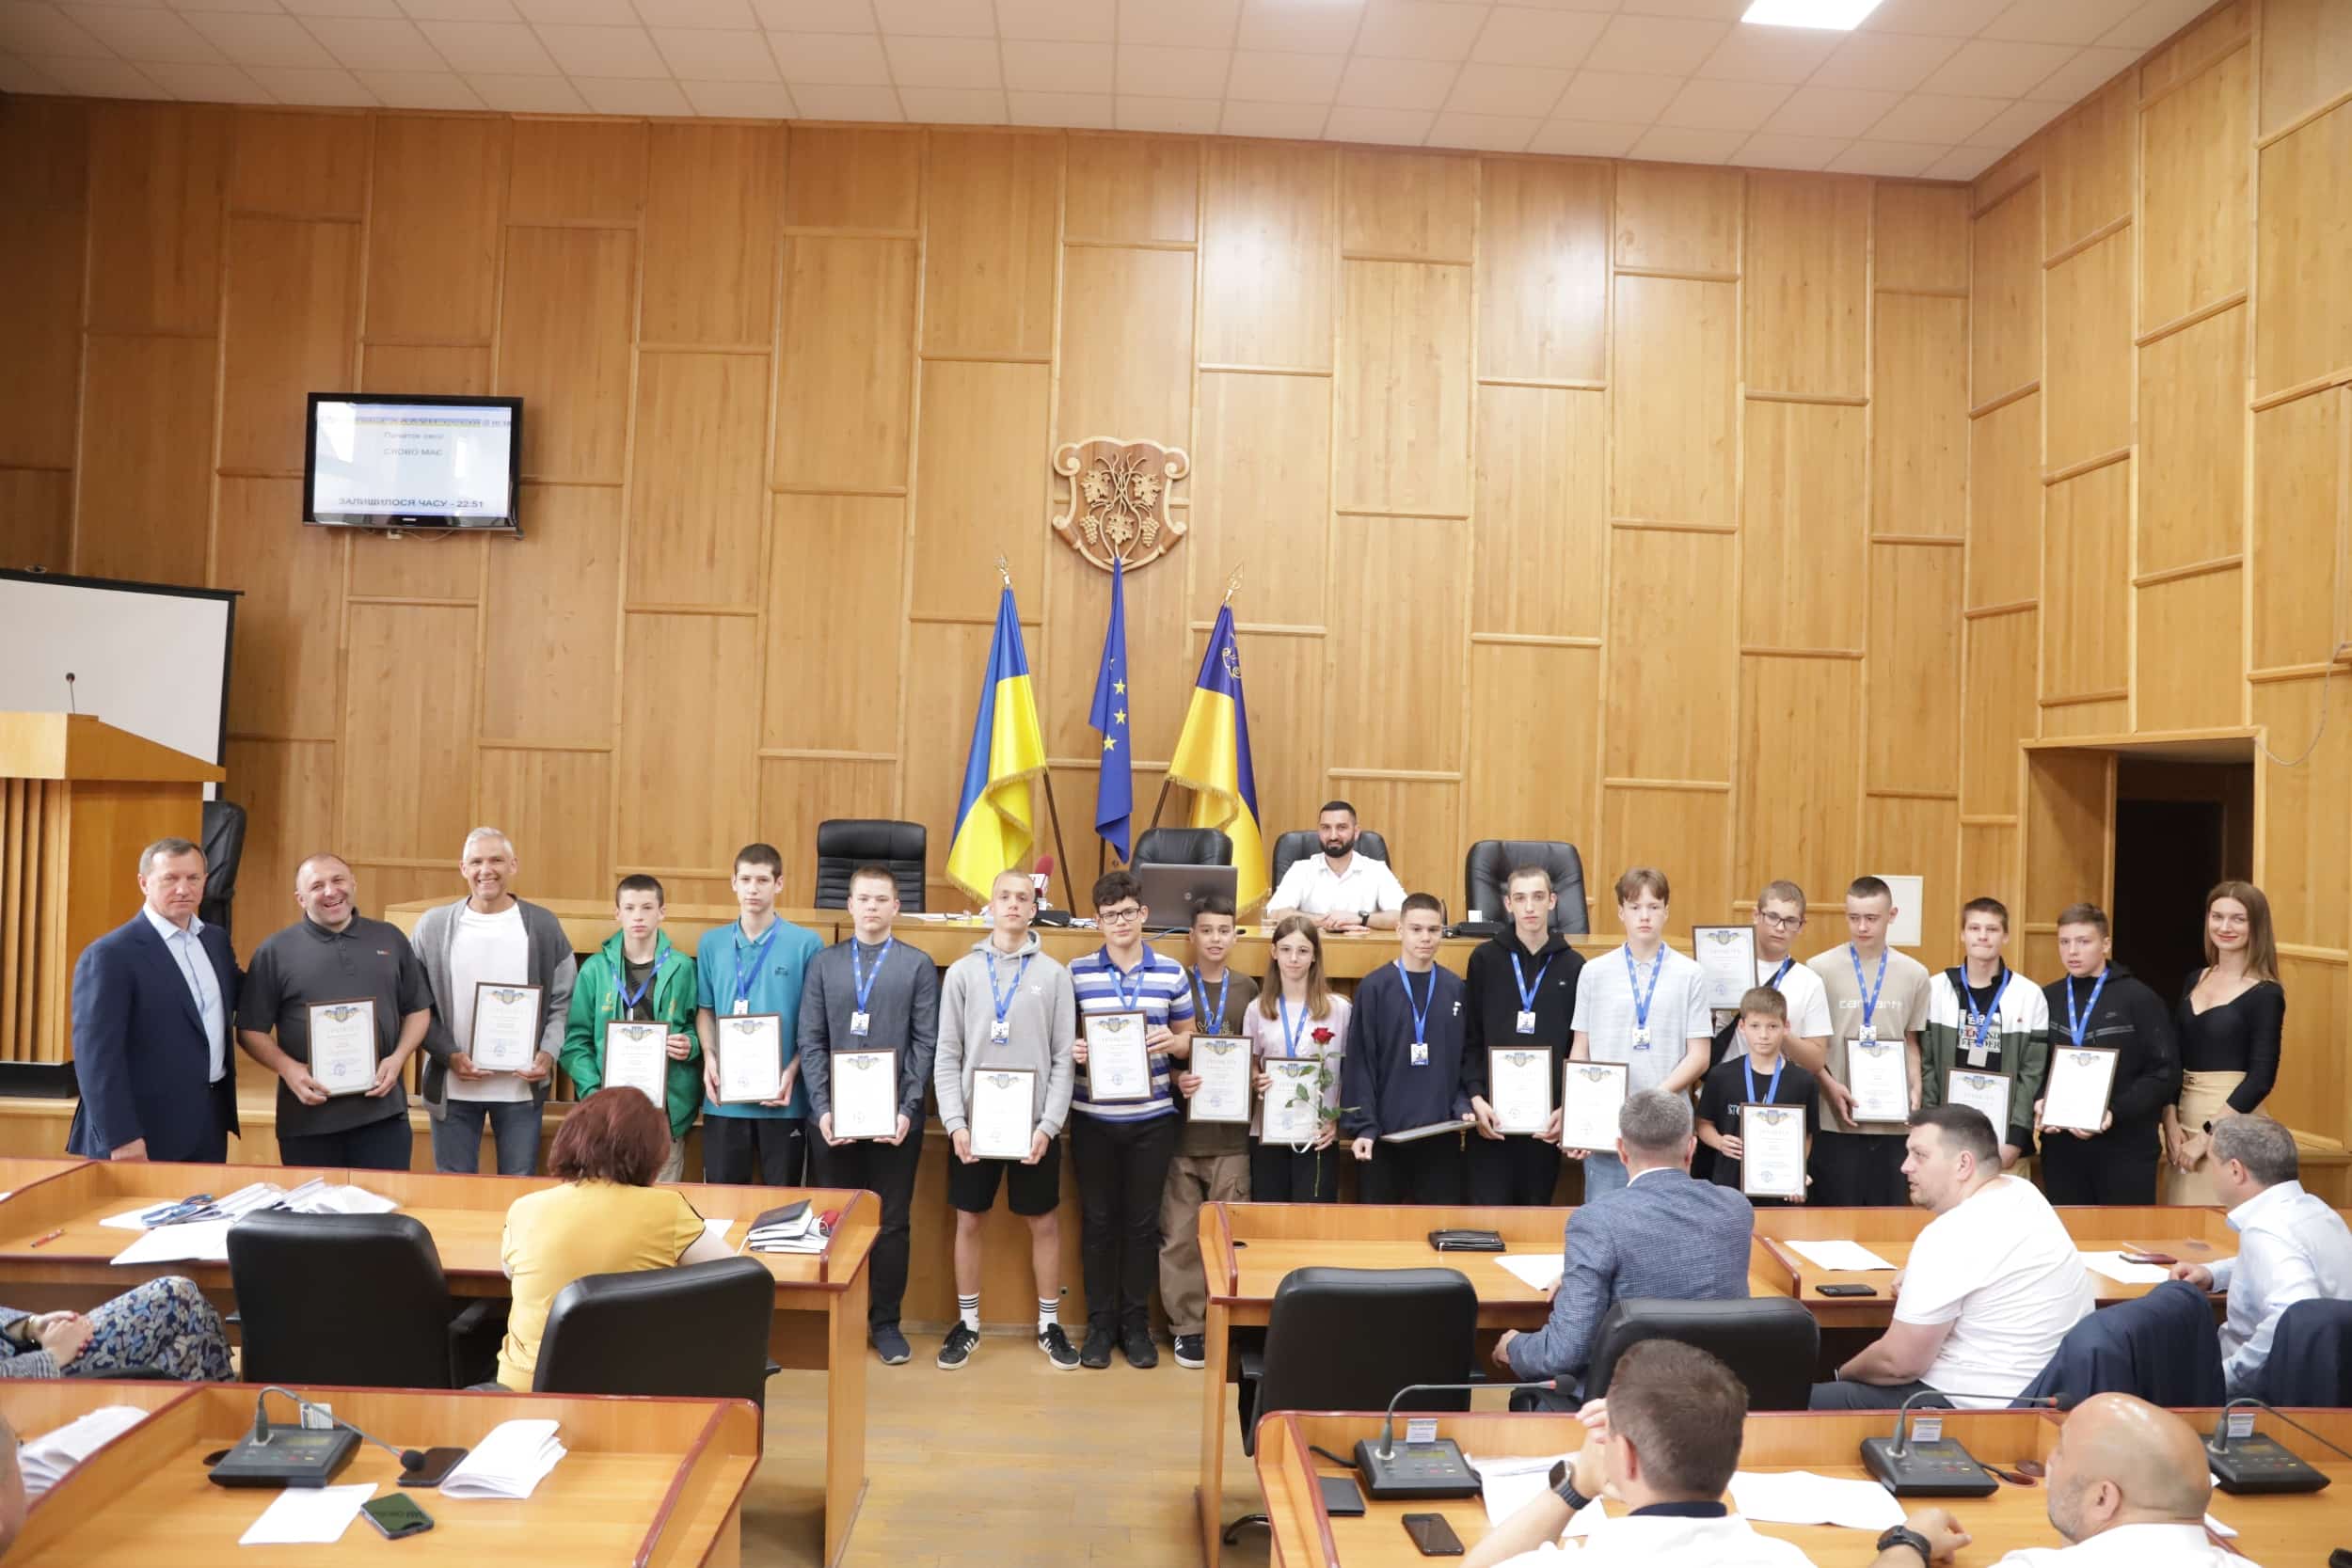 Ужгородських спортсменів нагородили перед початком сесії міської ради